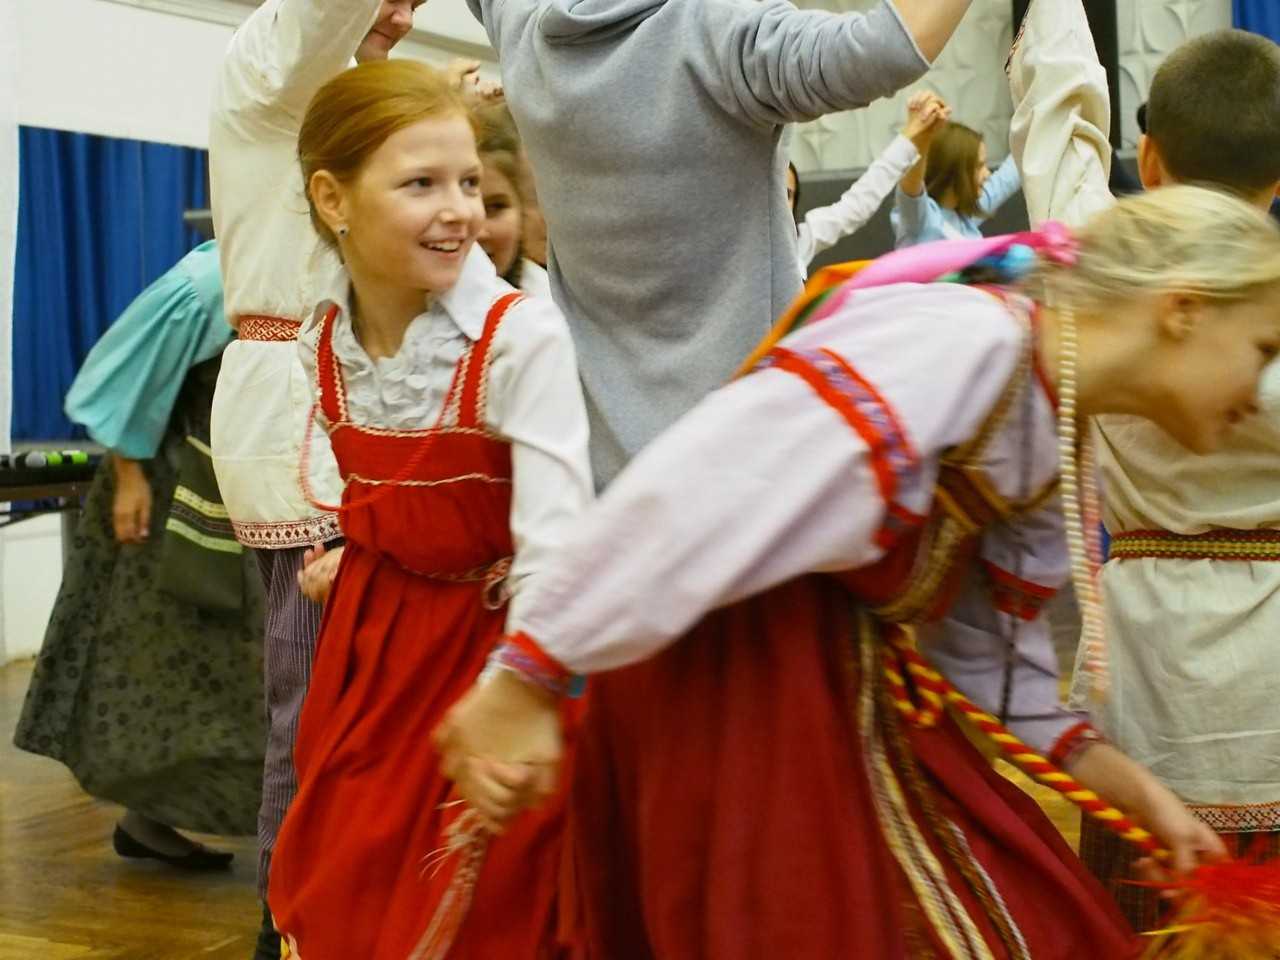 Русские народные игры для детей